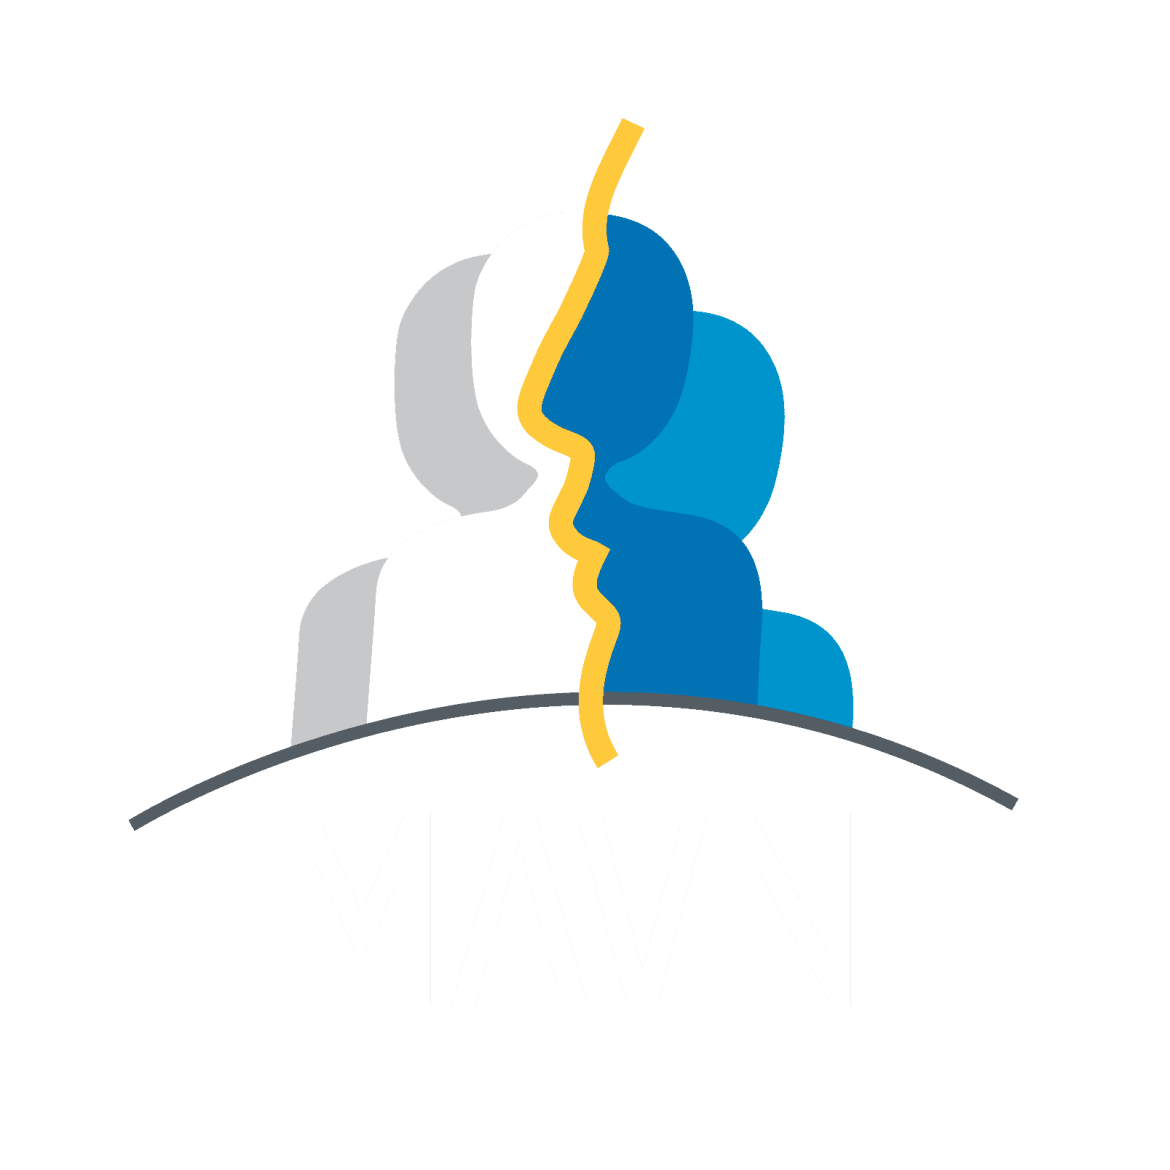 MAVN-LOGO-renv.png